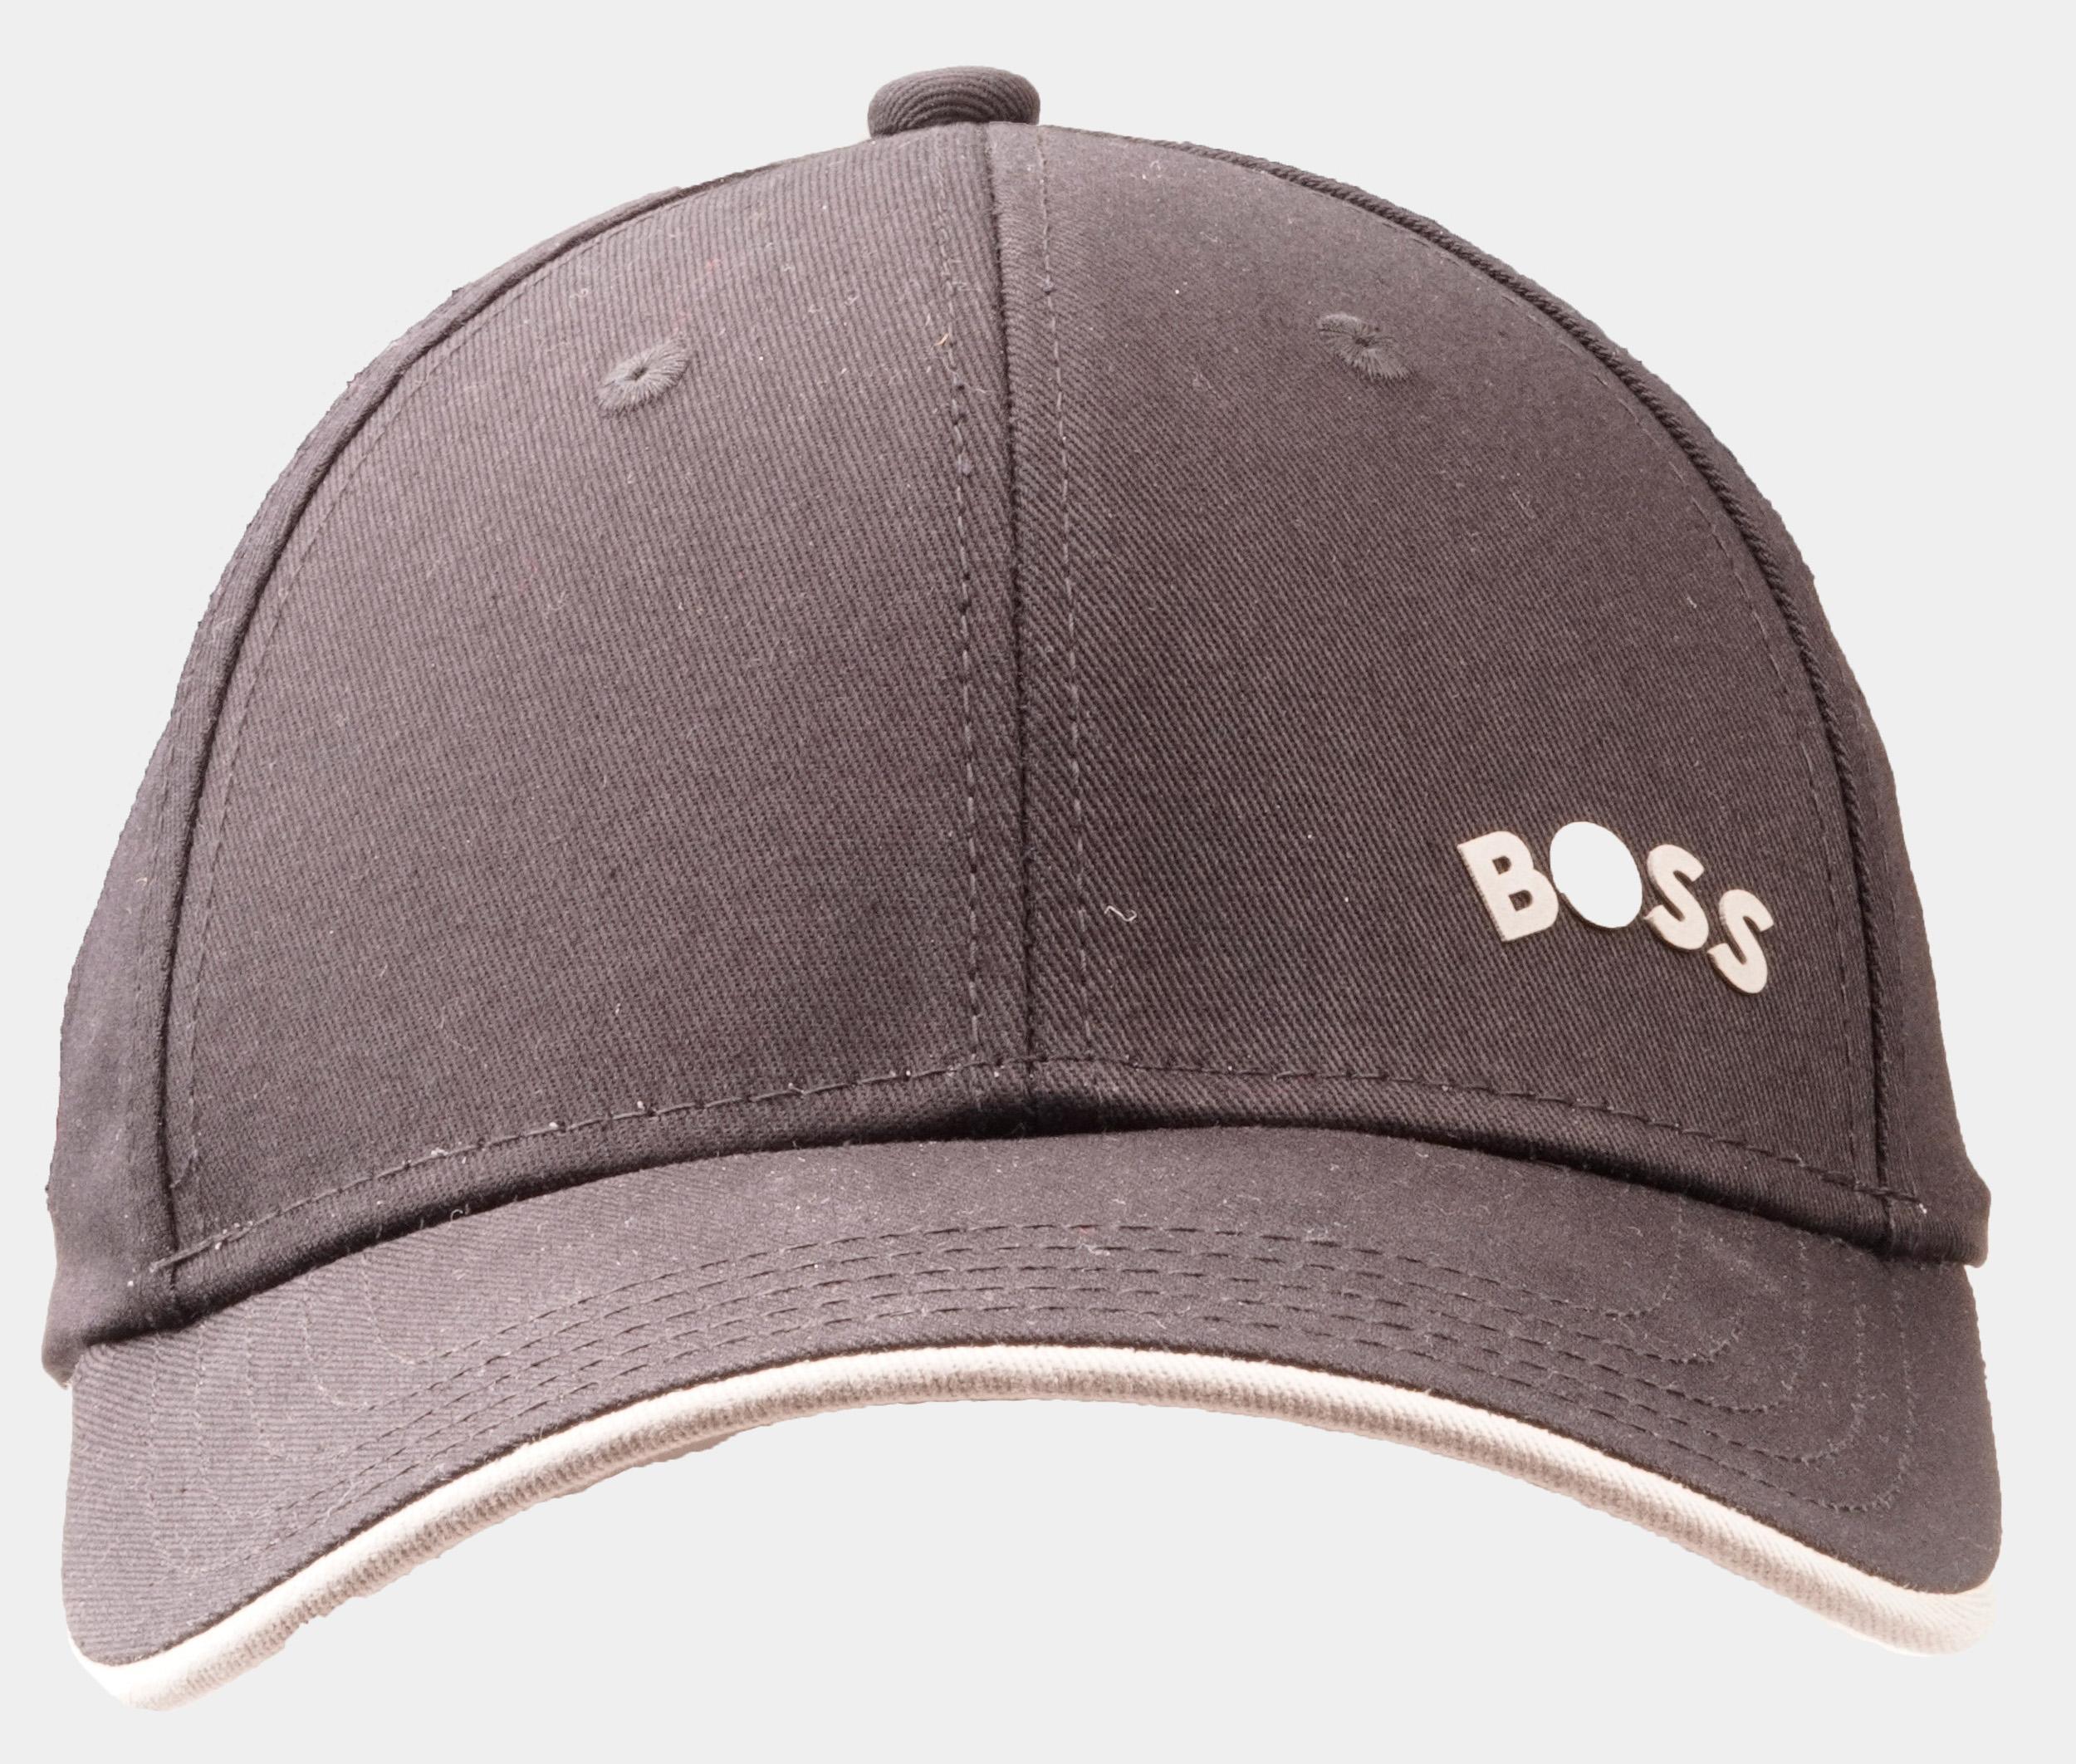 BOSS Green Cap Zwart Cap-Bold-Curved 10248871 01 50495855/001